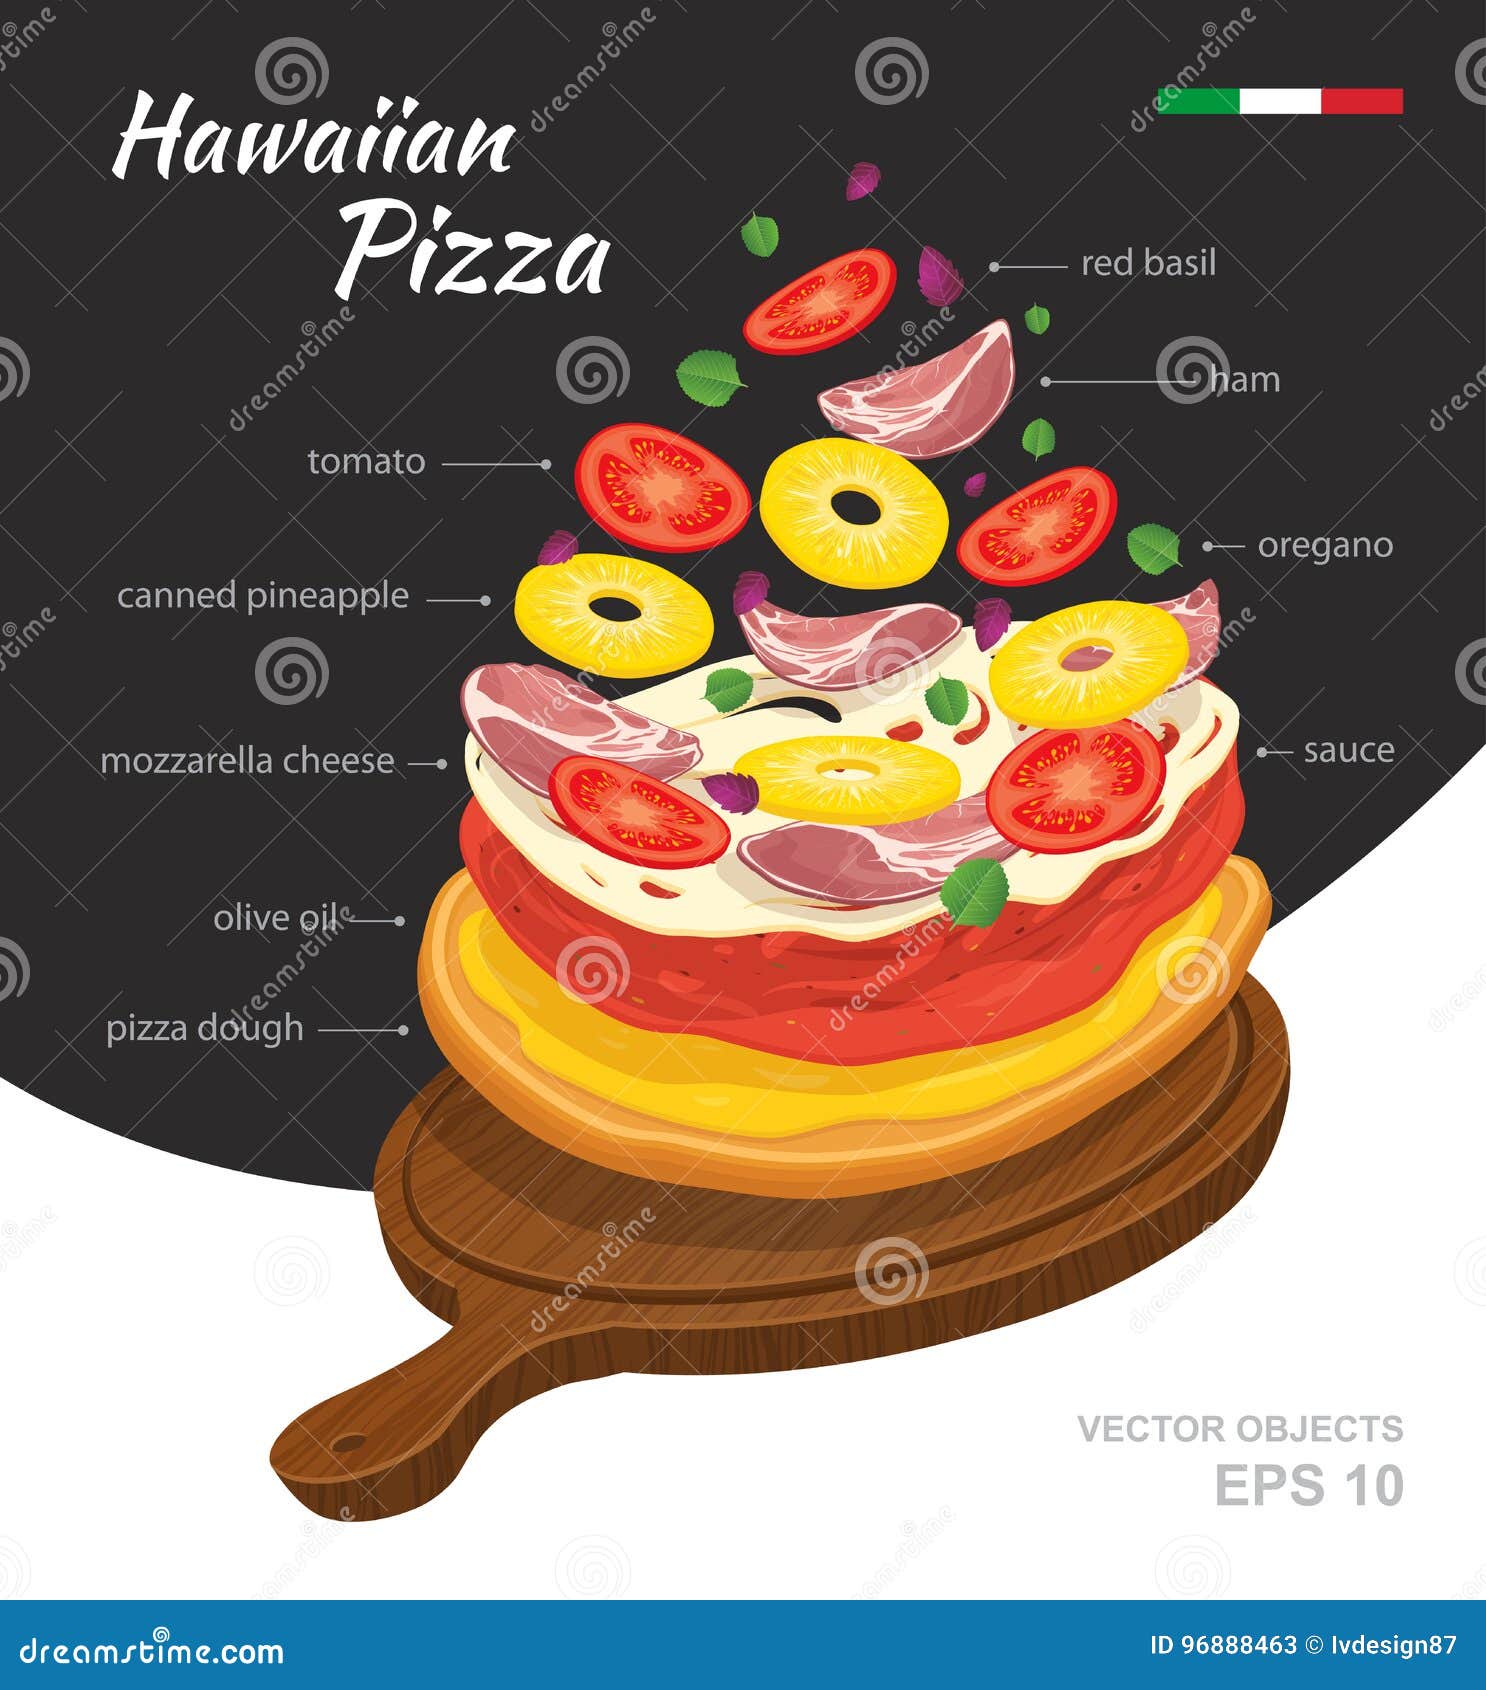 технологическая карта пицца гавайская фото 19